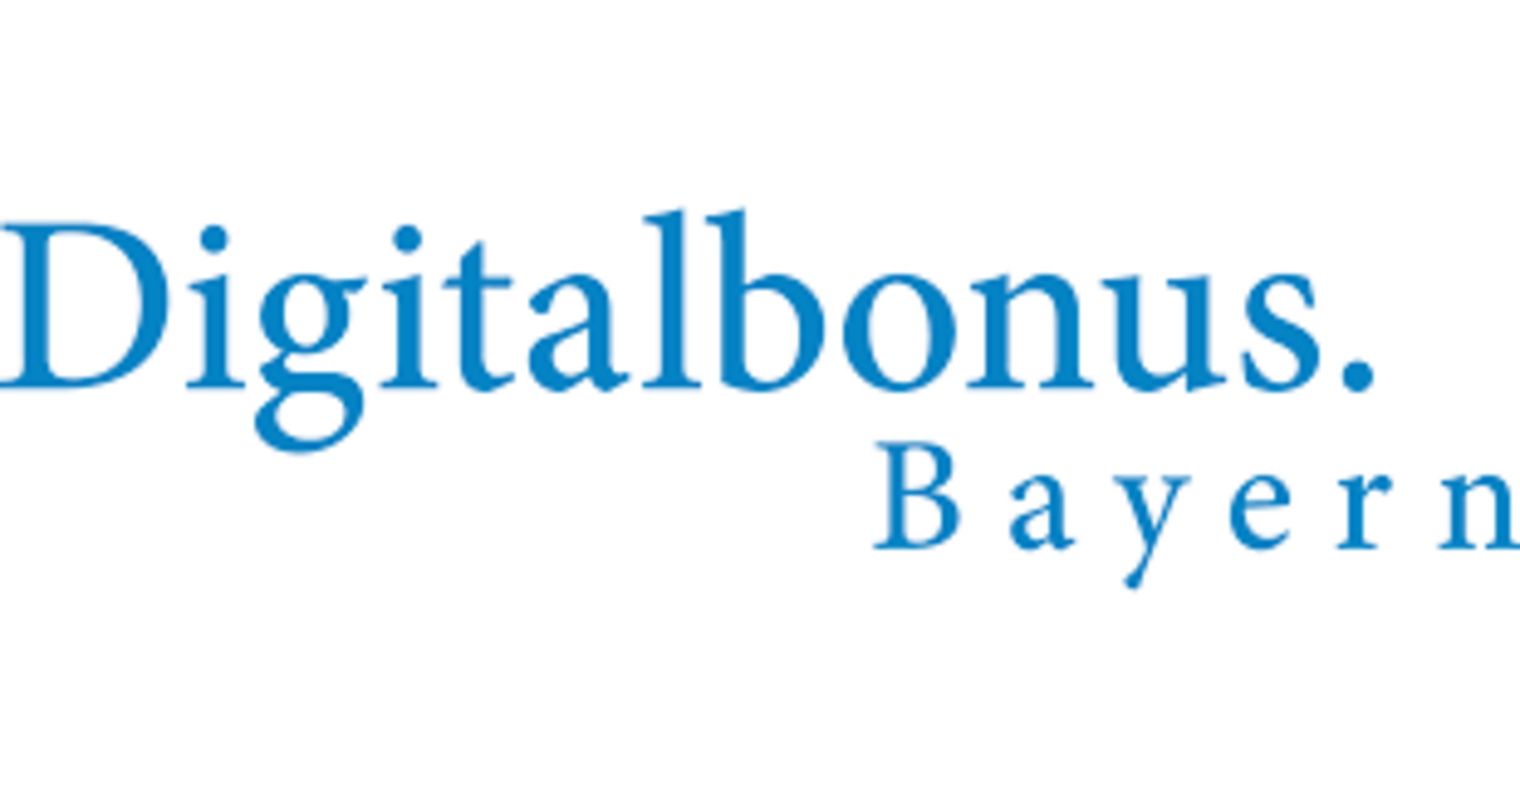 Logo Digitalbonus Bayern